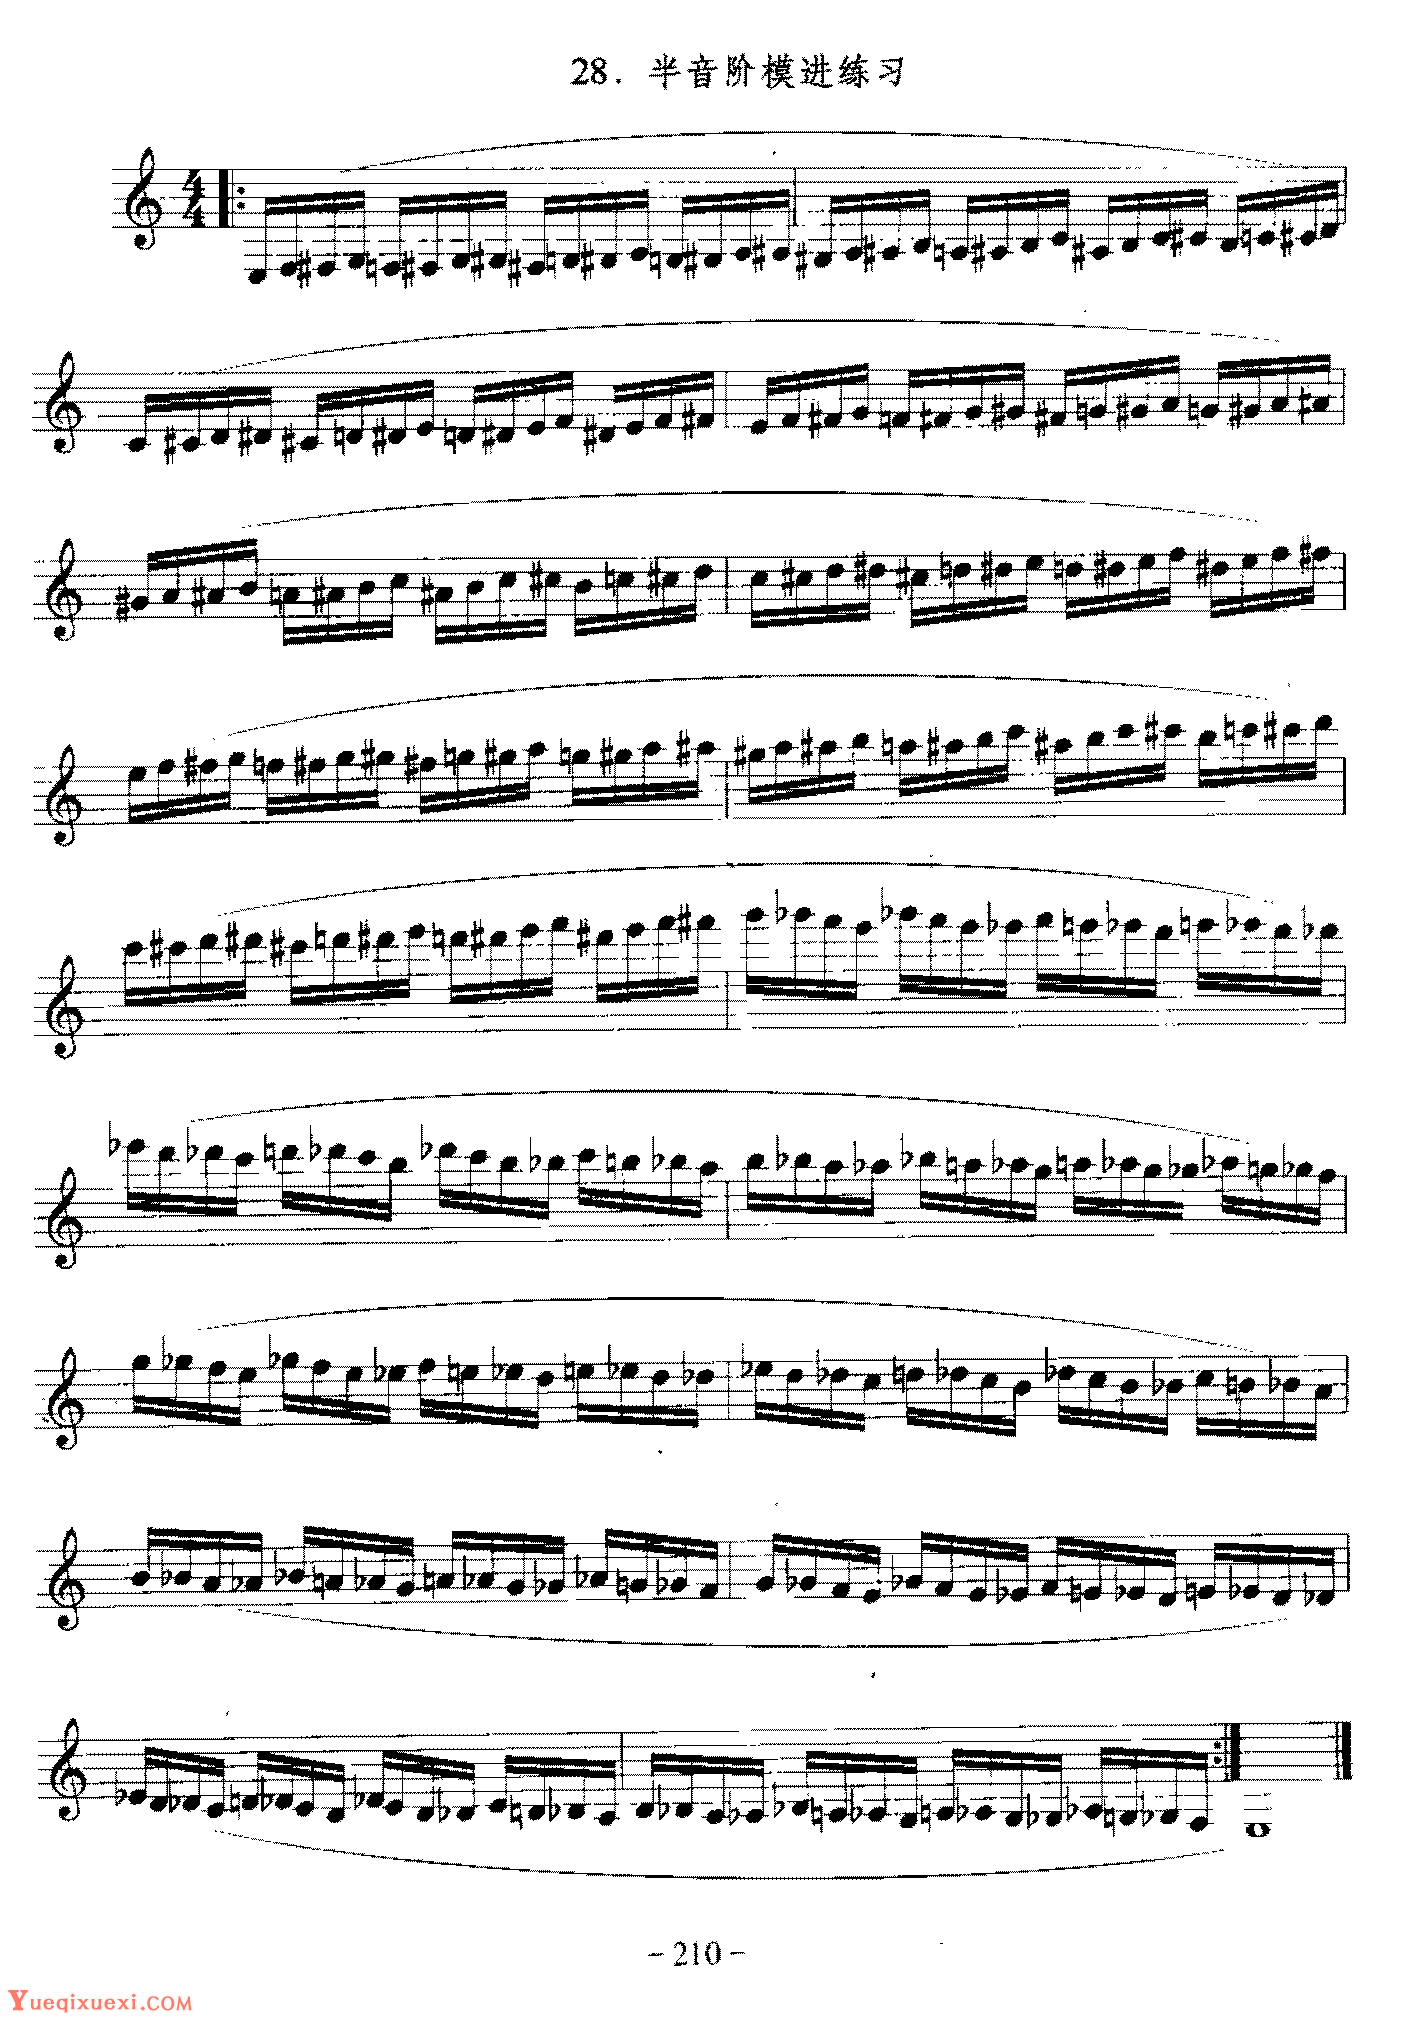 单簧管日常基础技术练习曲《半音阶模进练习》